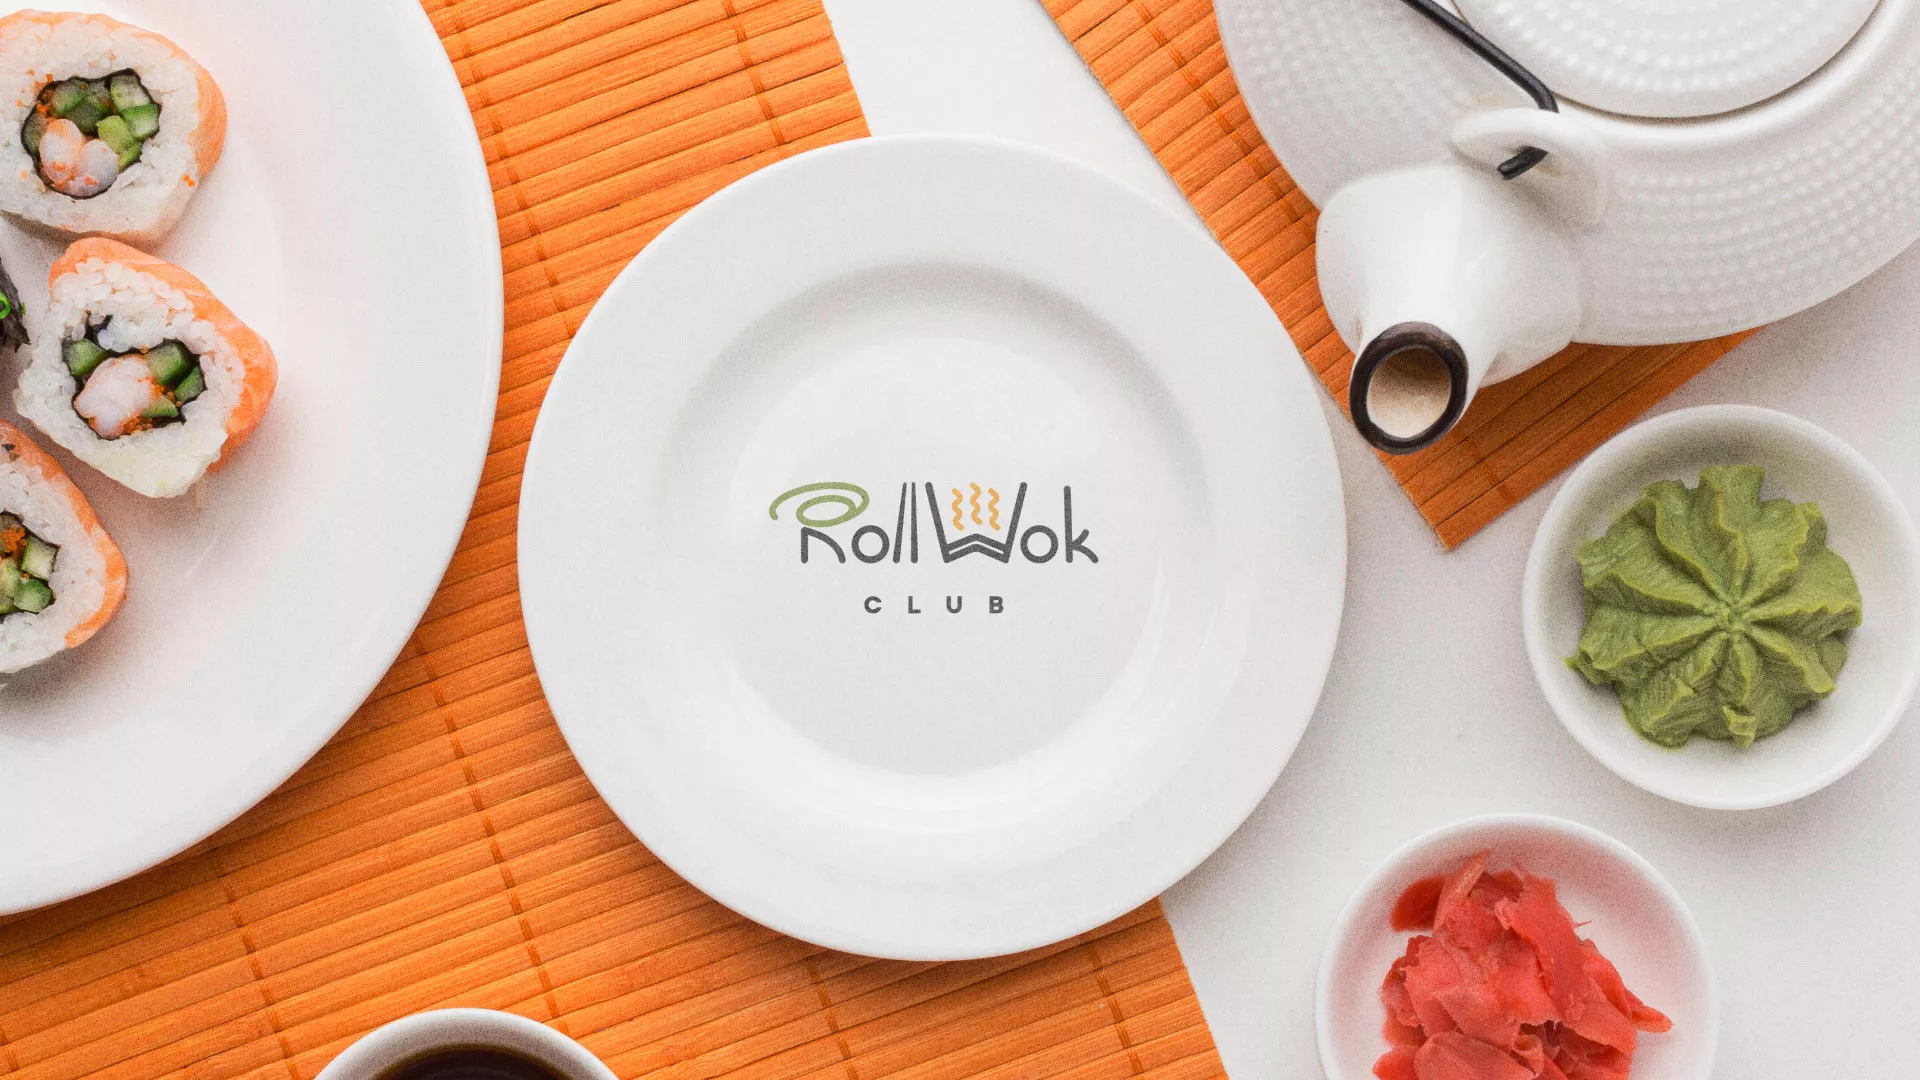 Разработка логотипа и фирменного стиля суши-бара «Roll Wok Club» в Абакане